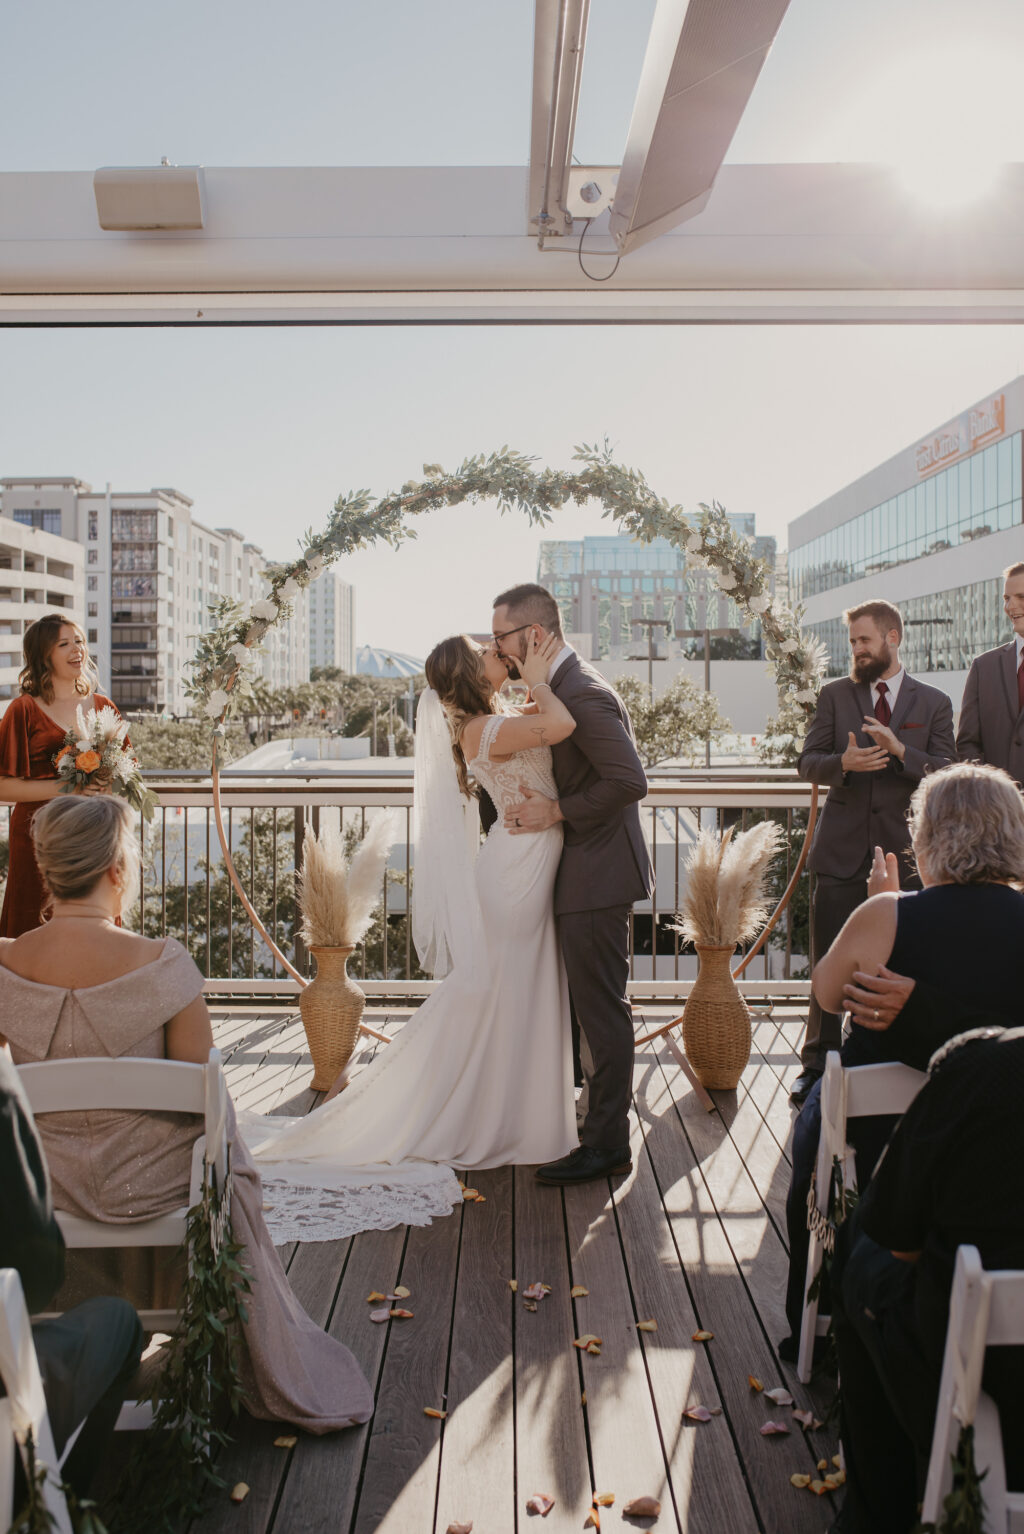 Bride and Groom De Santo Rooftop Wedding Ceremony Ideas with Greenery Circular Arch | De Santo Rooftop Ceremony | St Petersburg Venue Red Mesa Events | Planner Coastal Coordinating